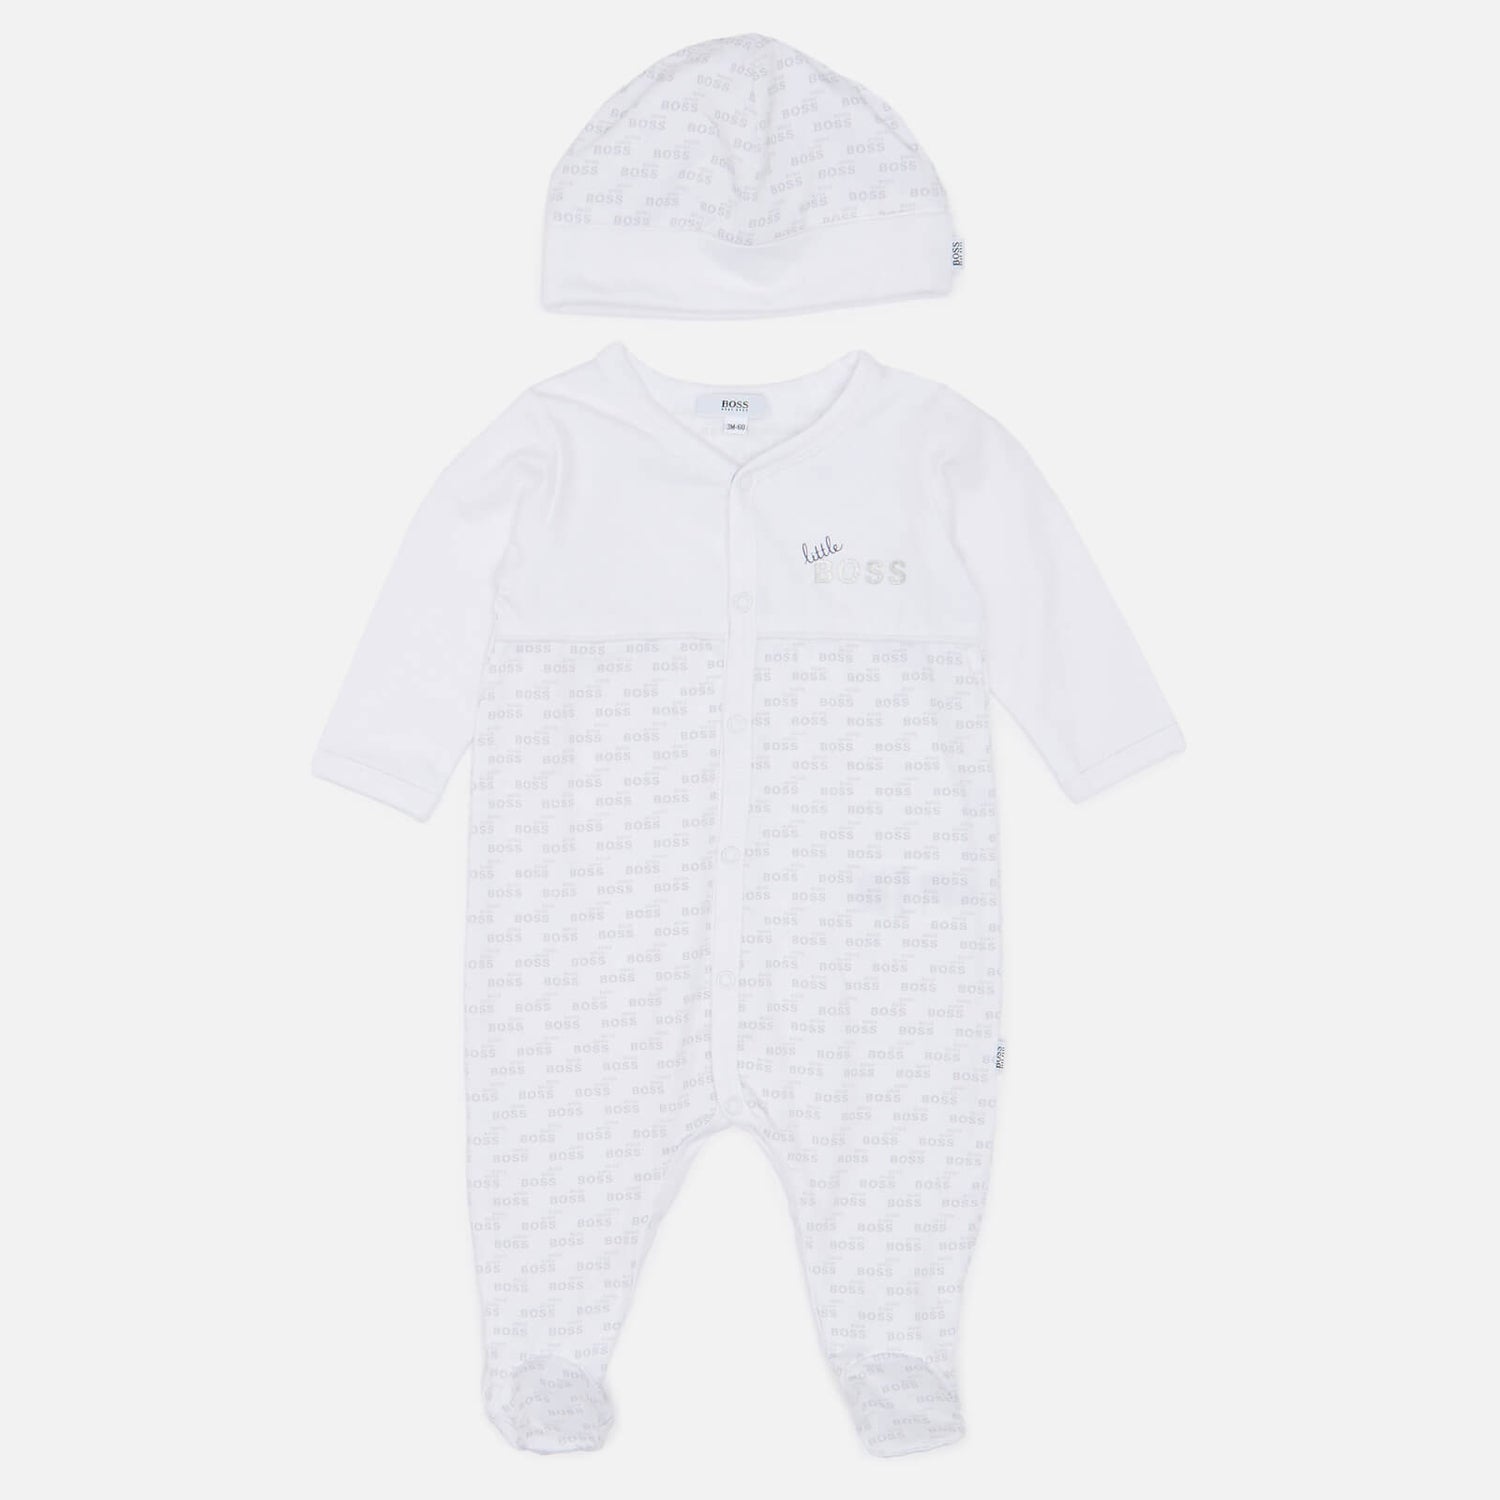 Hugo Boss Baby Sleepsuit & Pull On Hat Set - White